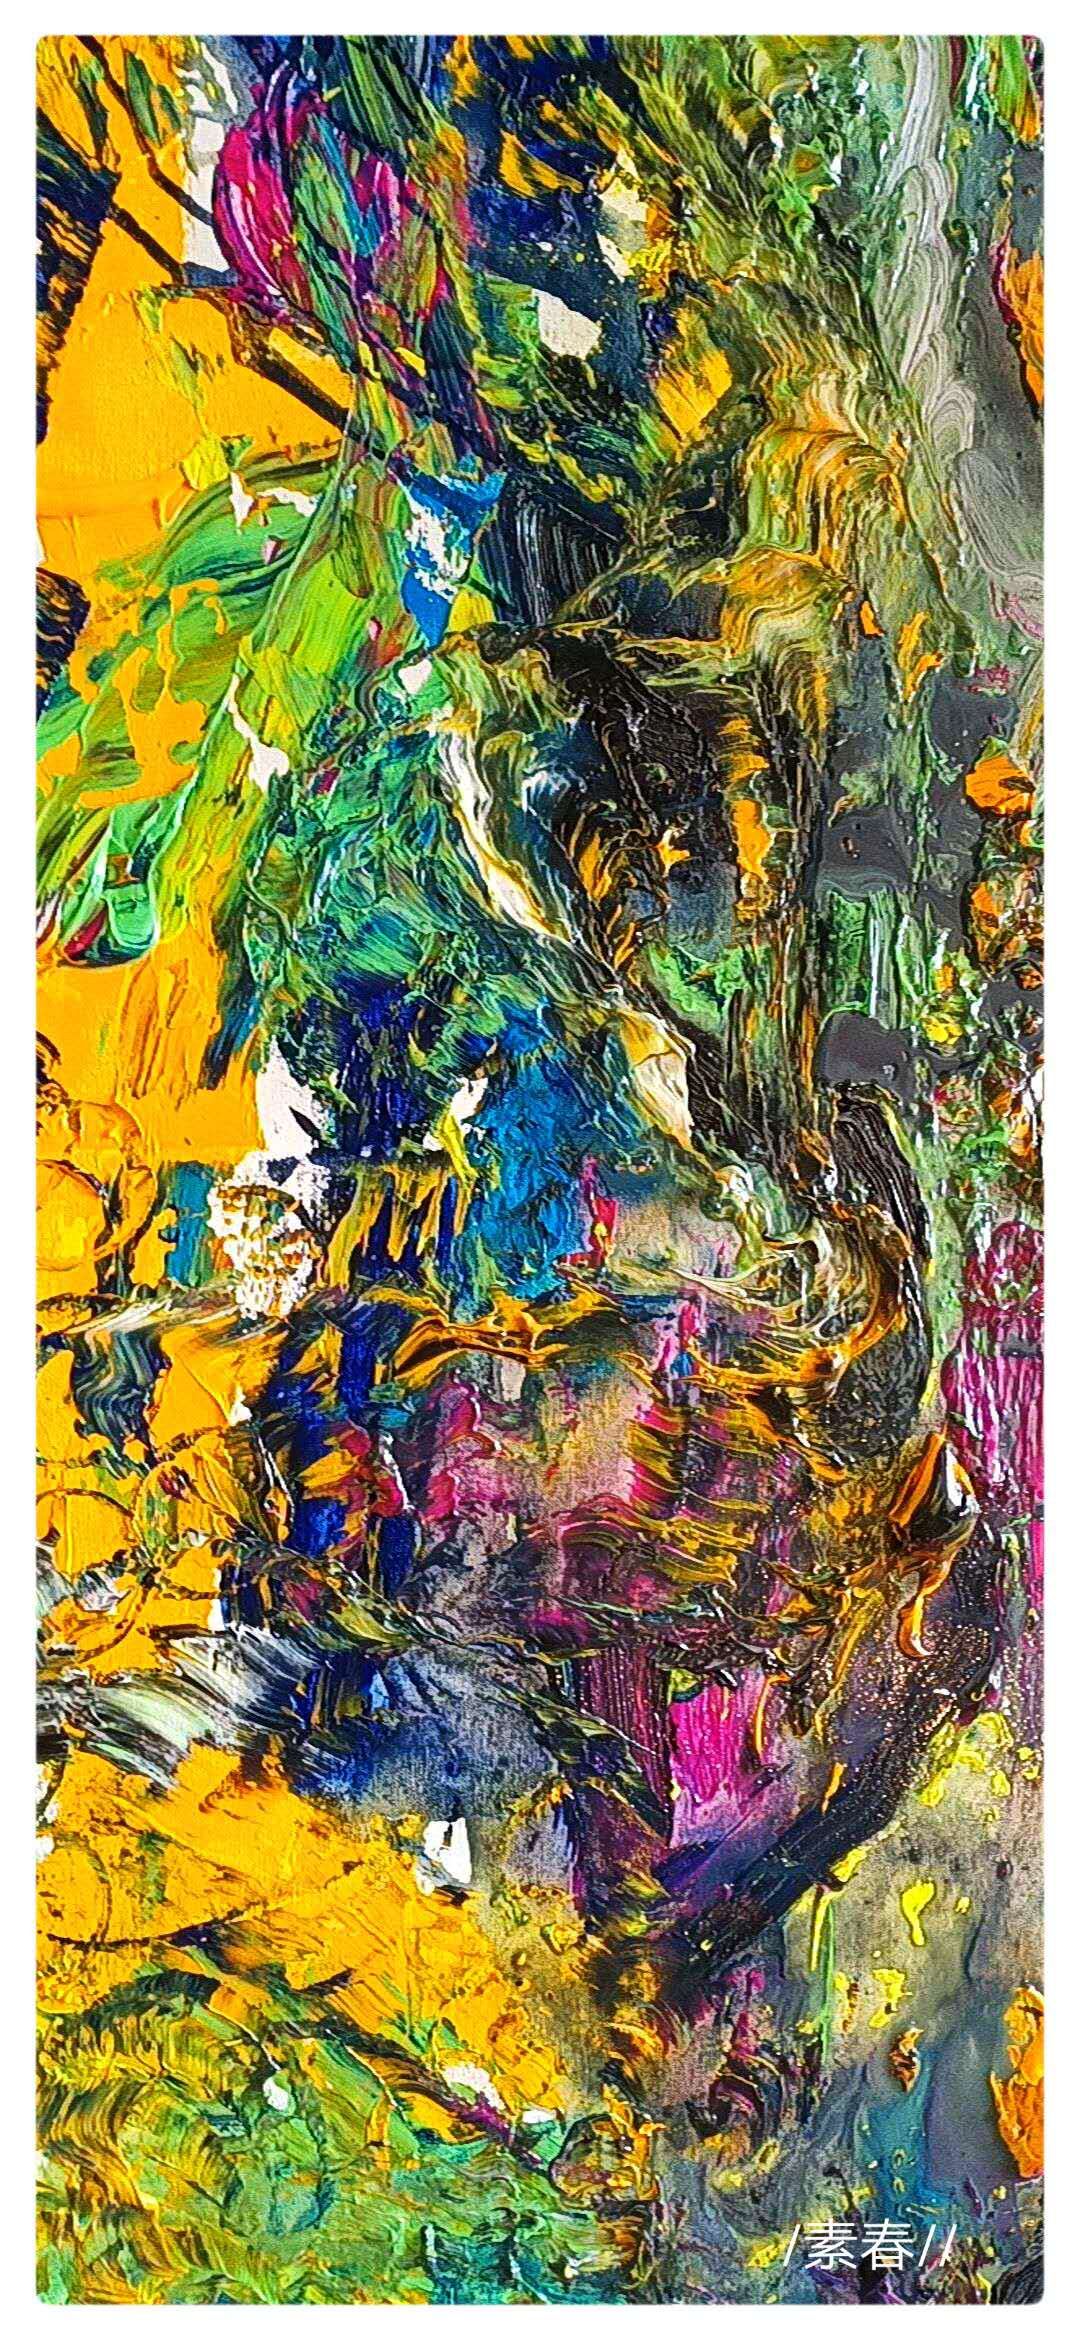 风格多变抽象画(二)刘素春作品展—色彩抽象沙龙双对大展(三十二)